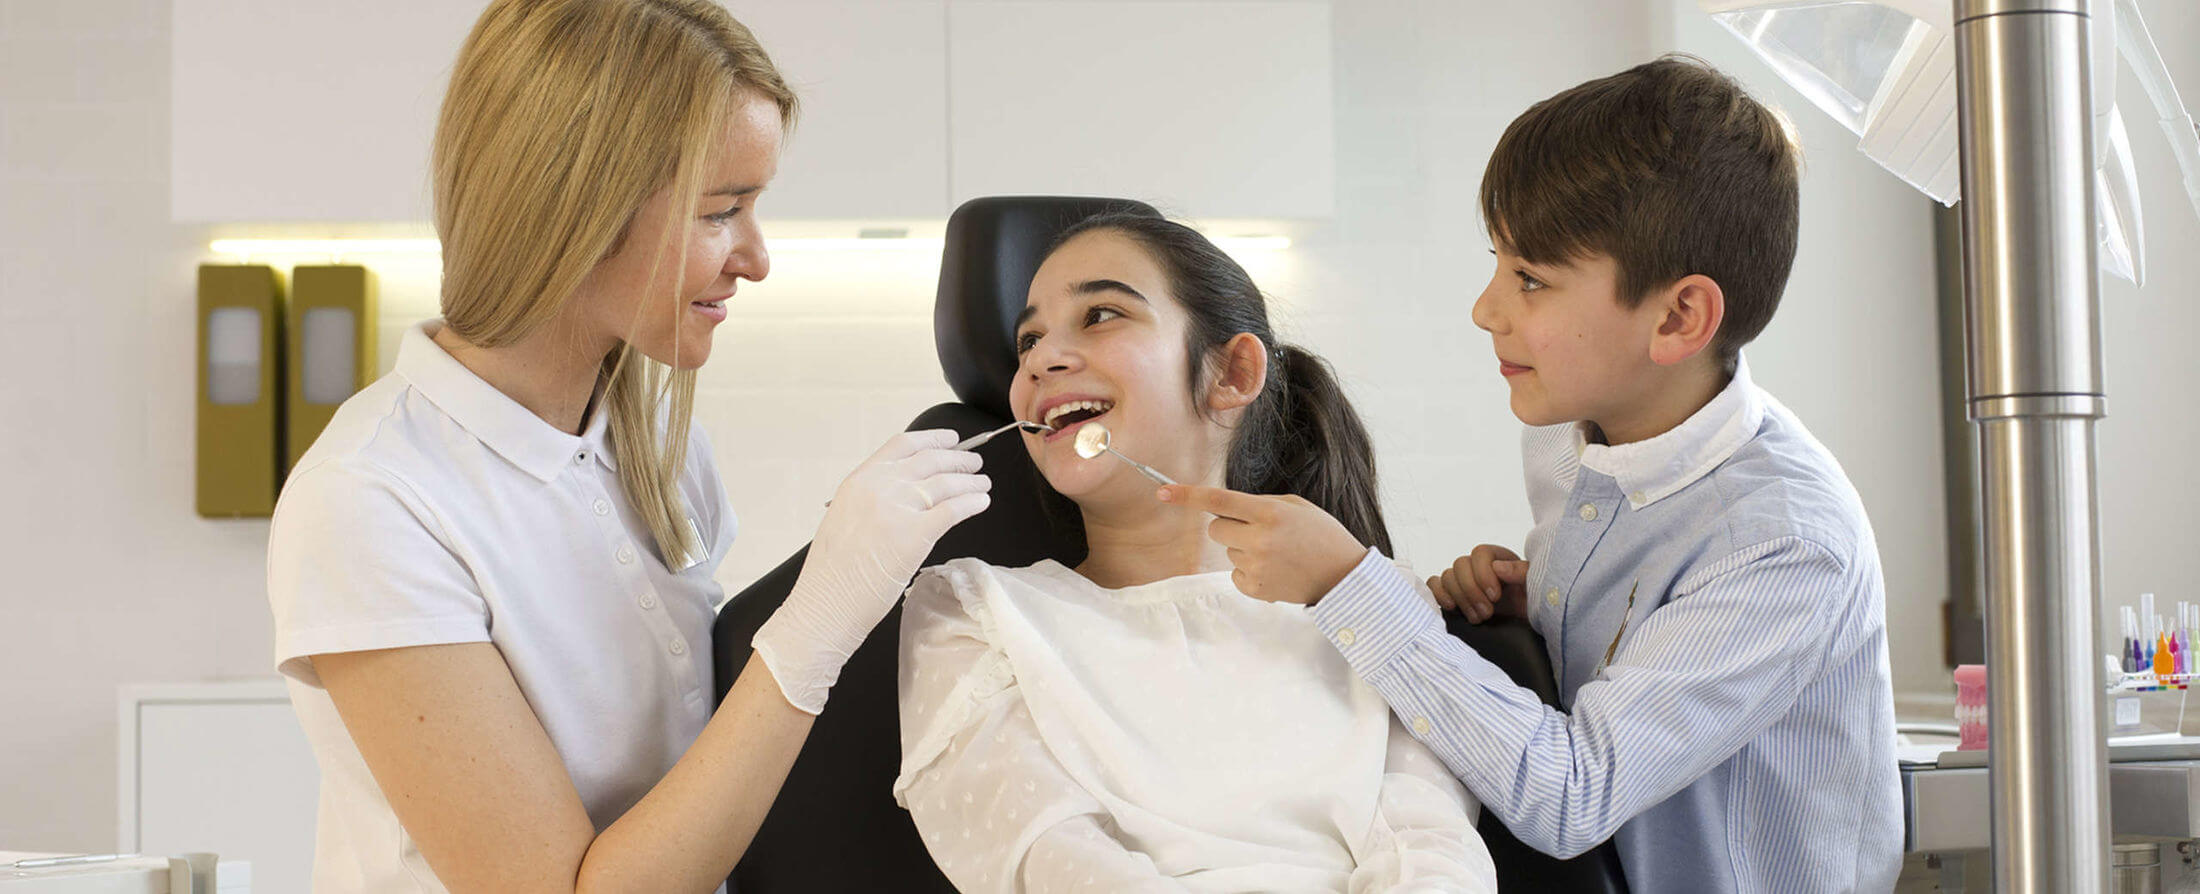 Kieferorthopäde Desislava Stanchev in Behandlung mit zwei lachenden Kindern | Brand Orthodontics Mainz